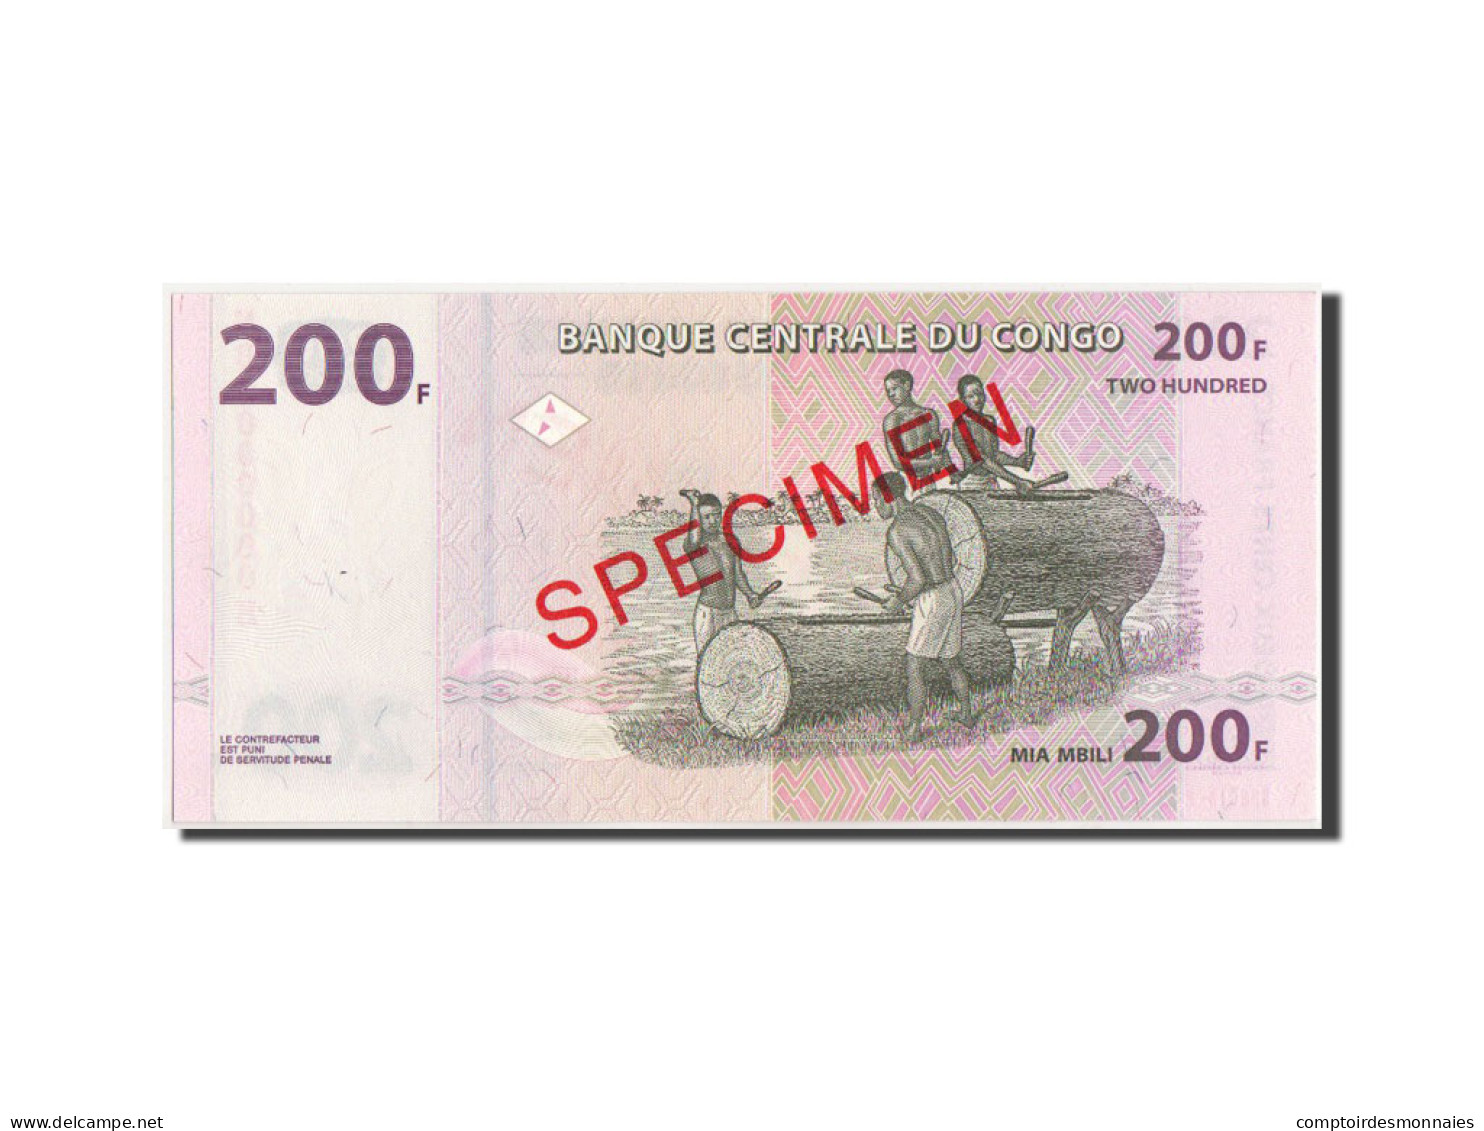 Billet, Congo Democratic Republic, 200 Francs, 2007, 31.07.2007, KM:99s, NEUF - Democratic Republic Of The Congo & Zaire